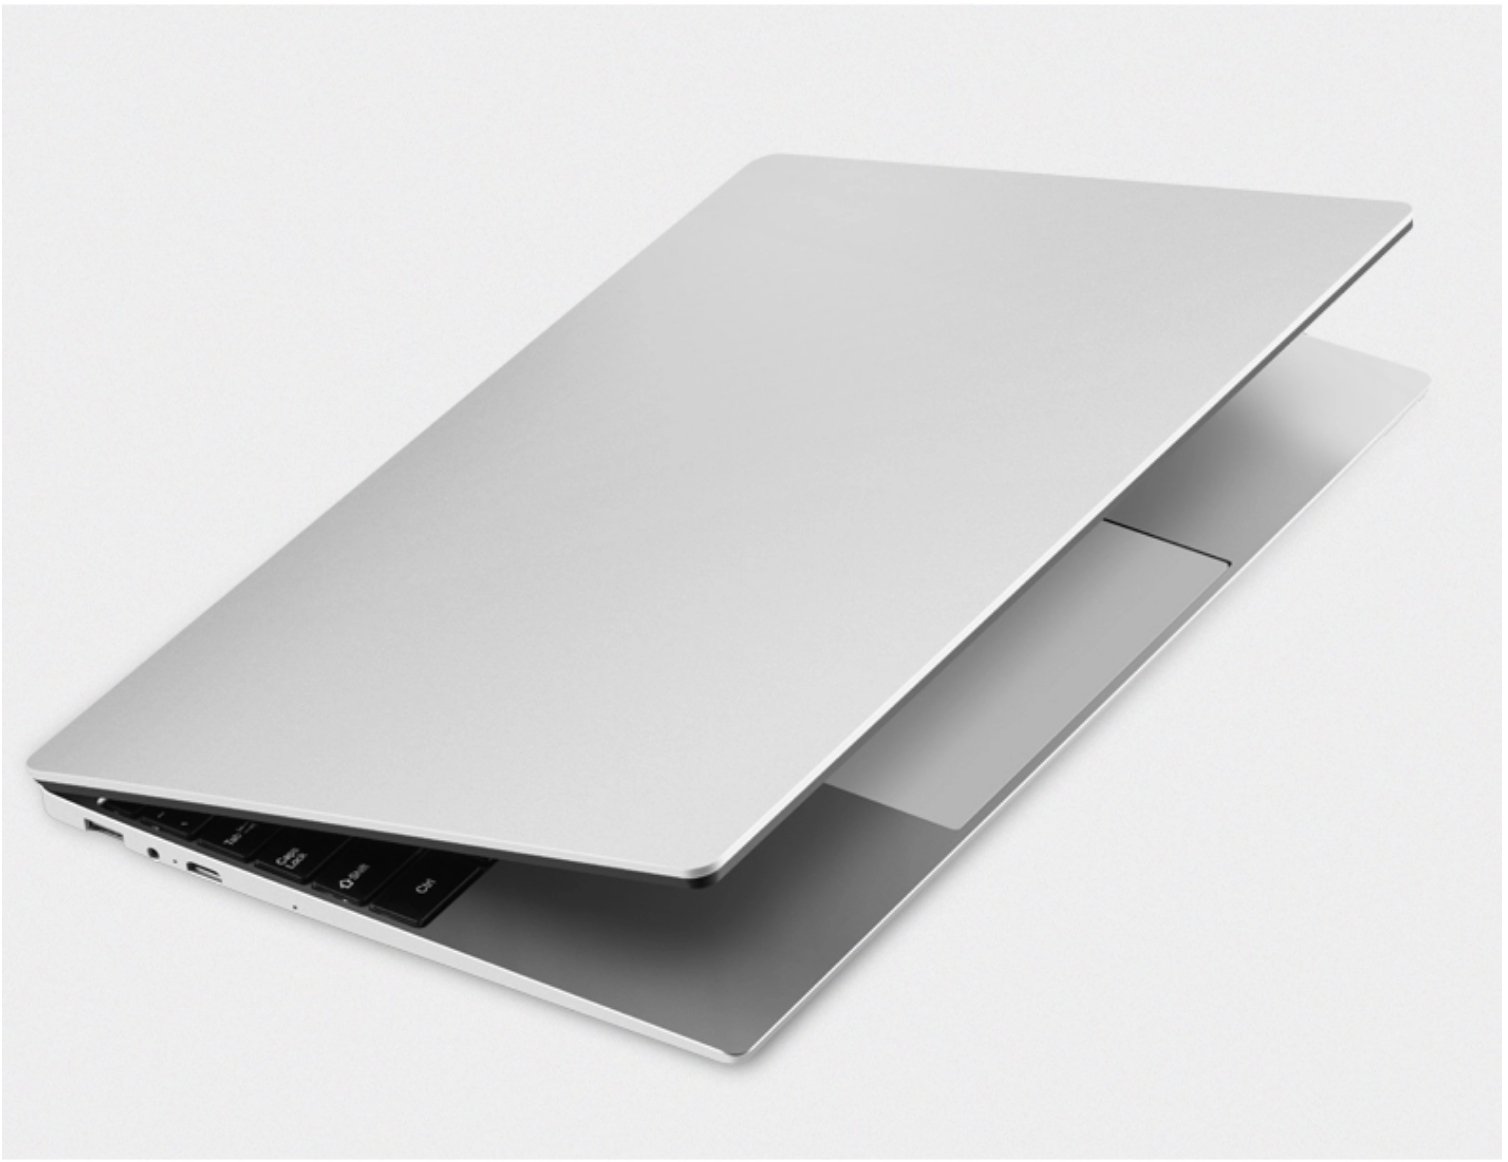 Notebook 13.3 Inch Air Laptop 8G ram 256G ssd Quad-Core Intel i5 7Y54 GreatEagleInc